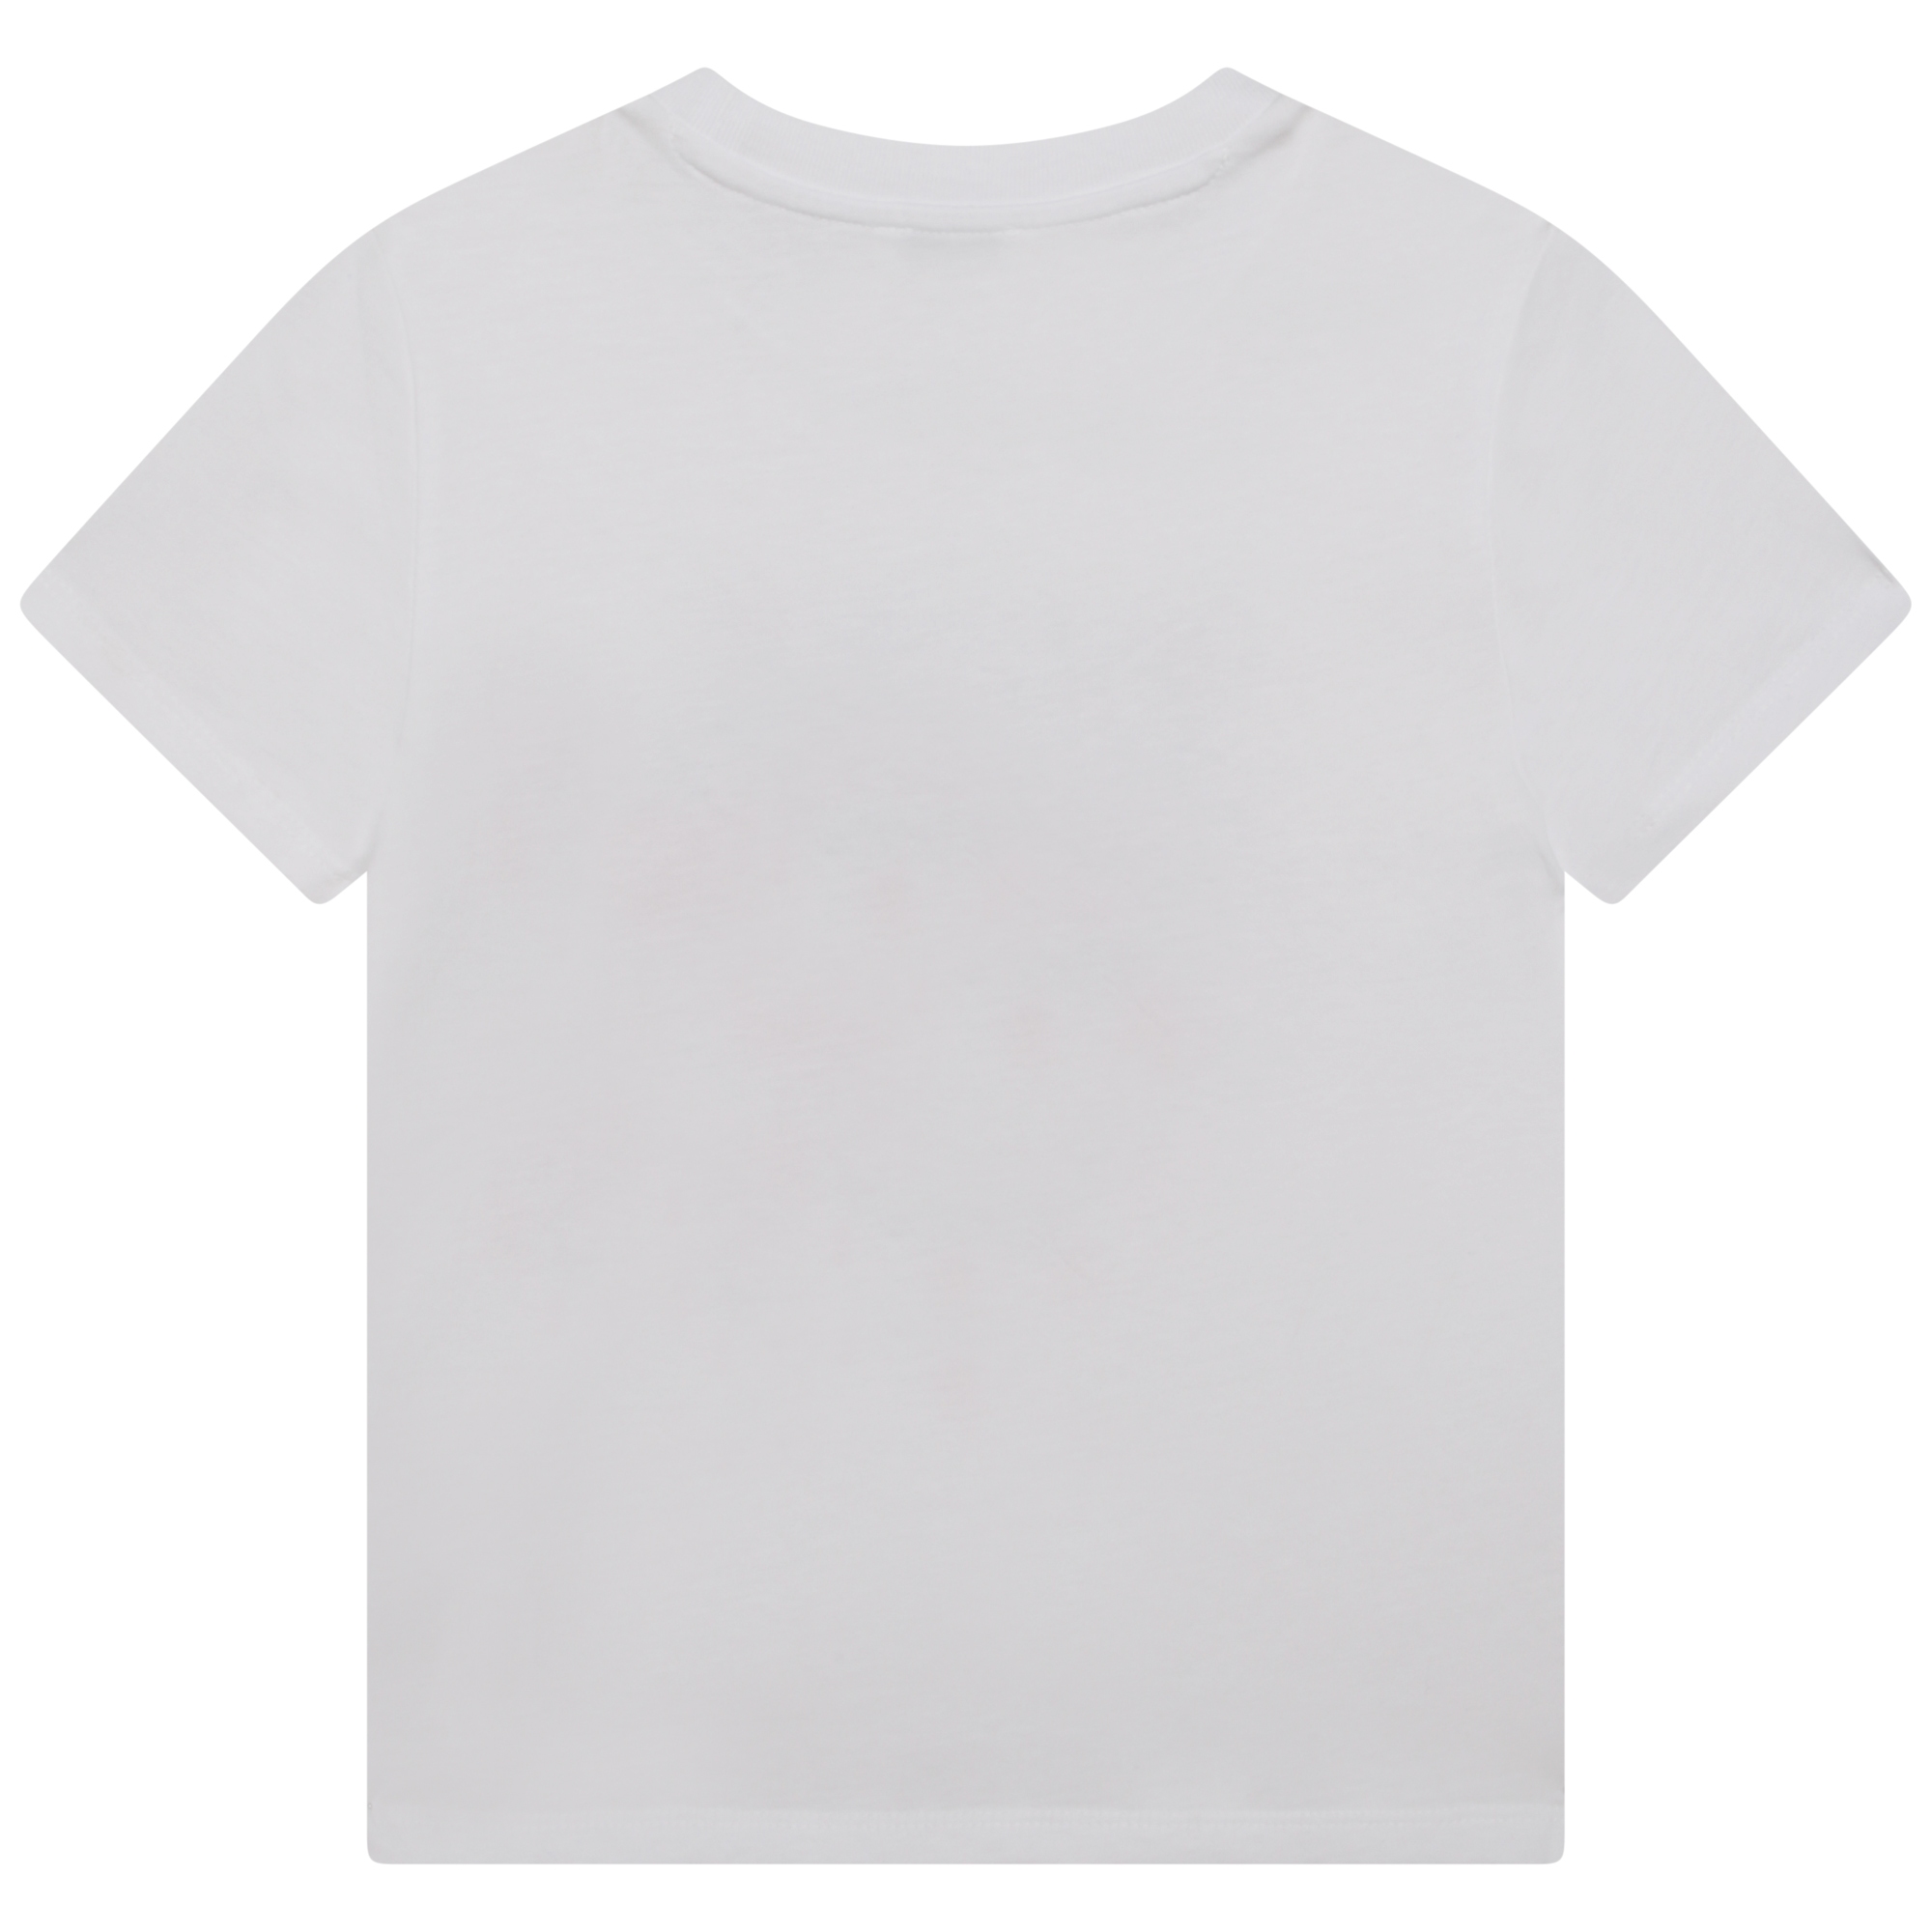 T-shirt avec imprimé Tigre KENZO KIDS pour FILLE